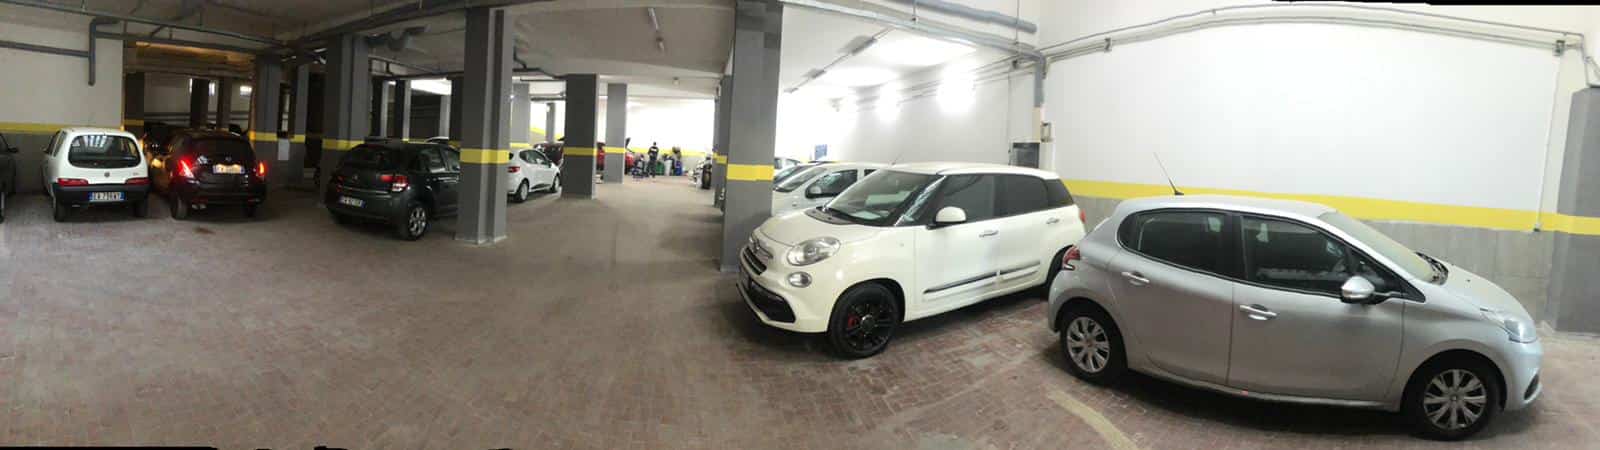 Parcheggi coperti First Parking - Aeroporto Napoli Capodichino